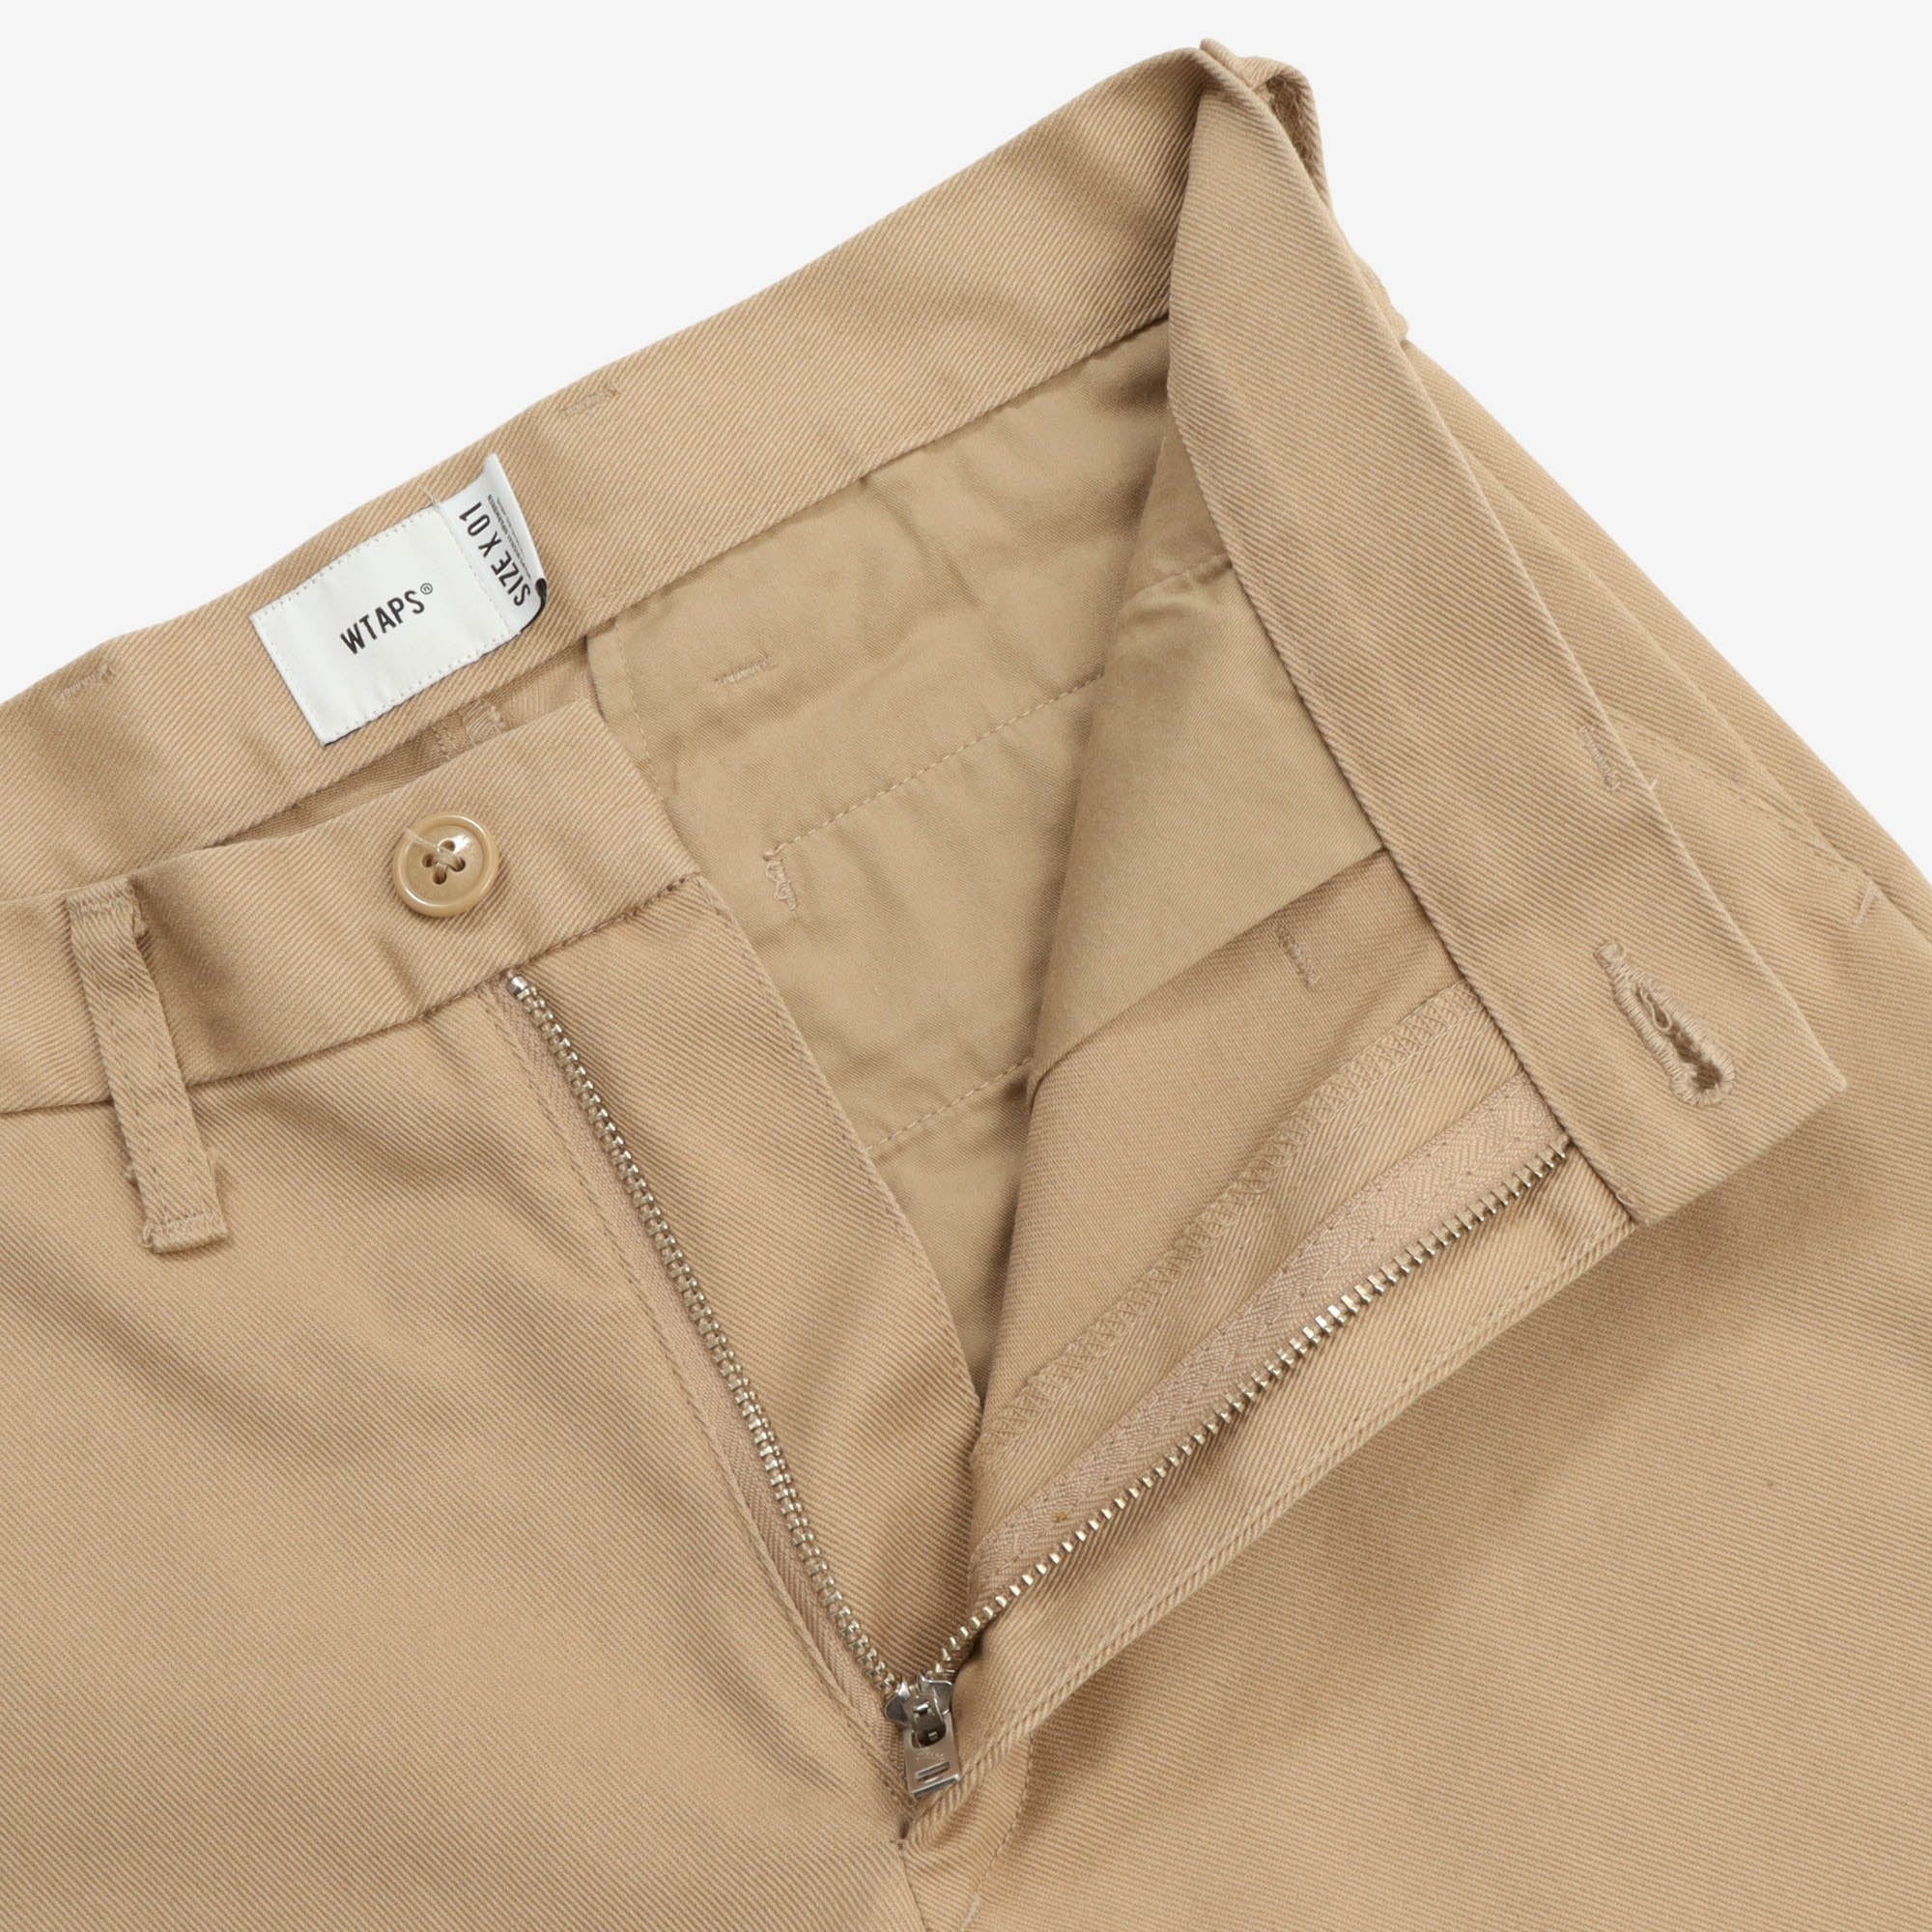 Cotton Twill Trousers (30W x 27L)